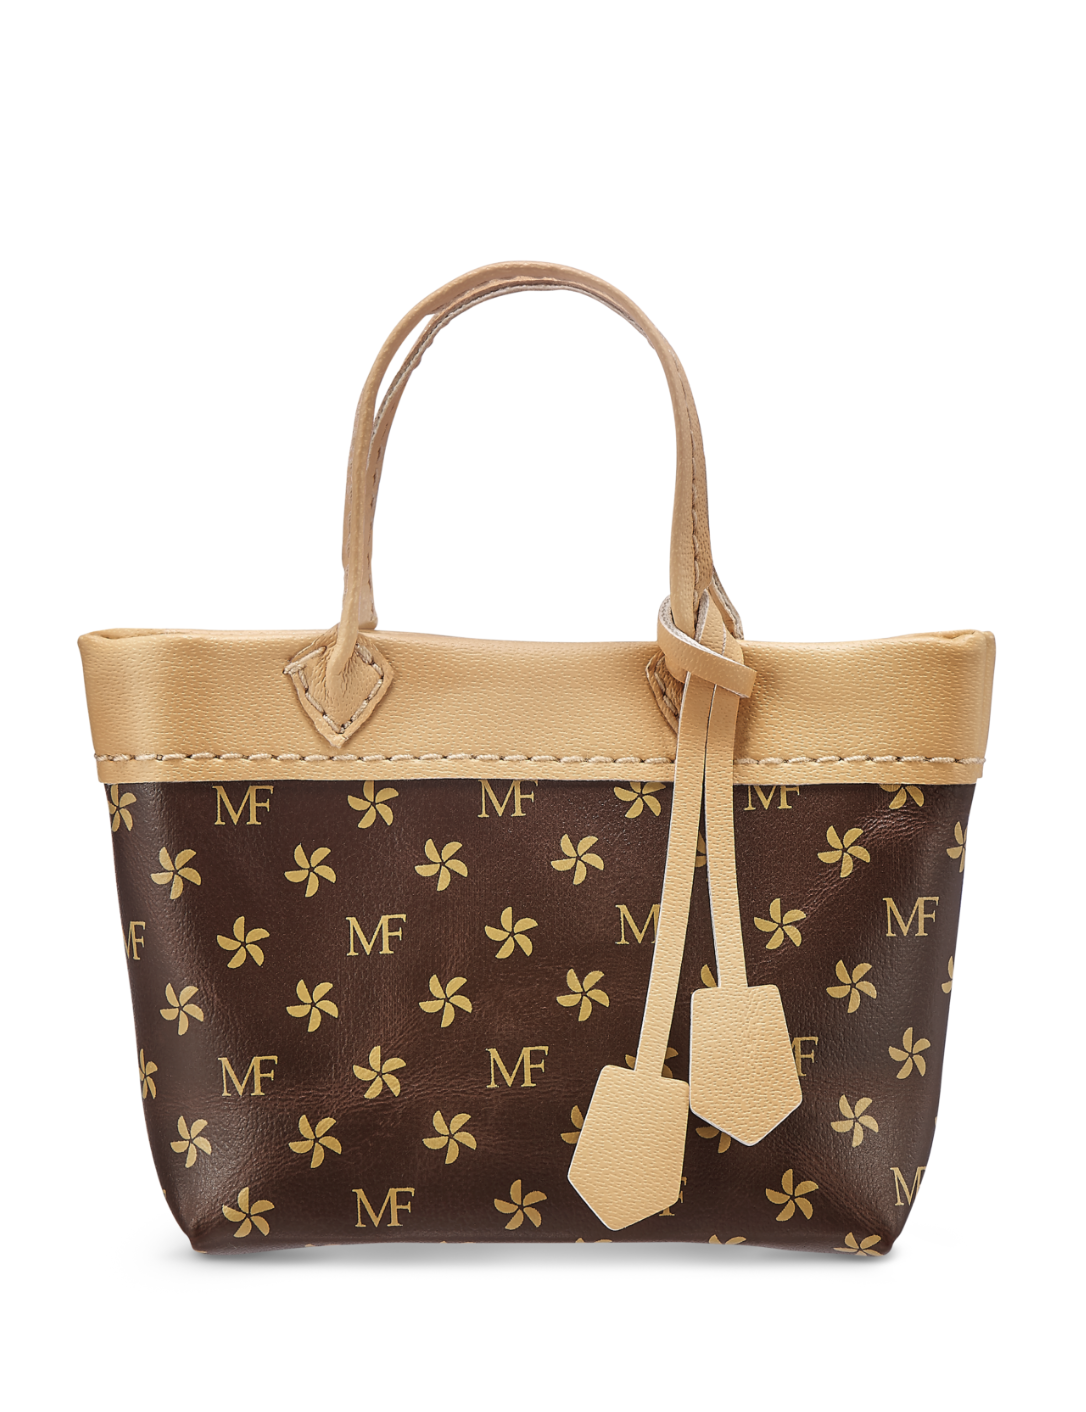 ZURU Mini Fashion Brown 1/6 Scale Handbag